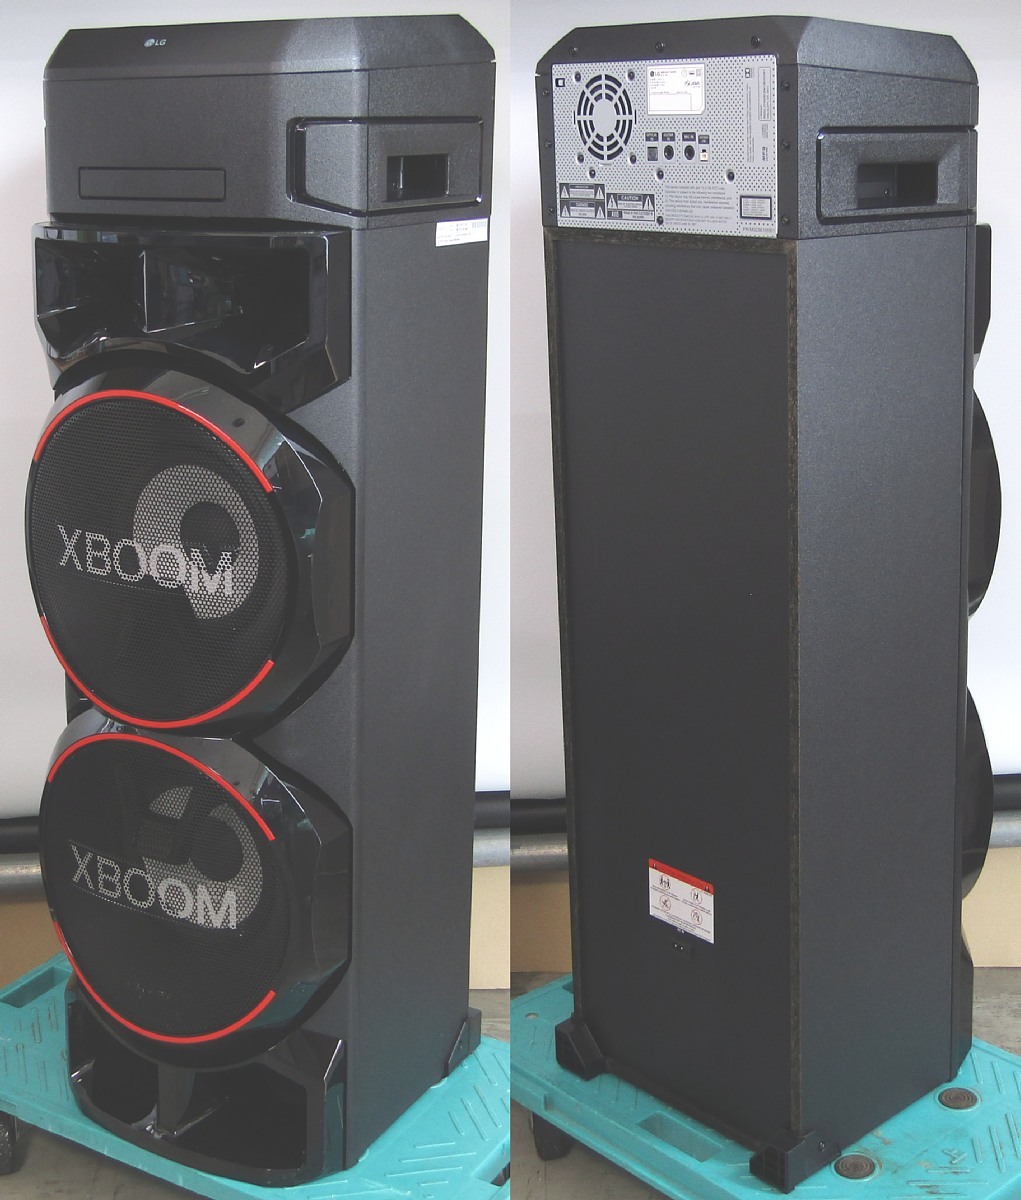 特価大特価 LG エルジー DJスタイル スピーカーシステム XBOOM Q7d6Y